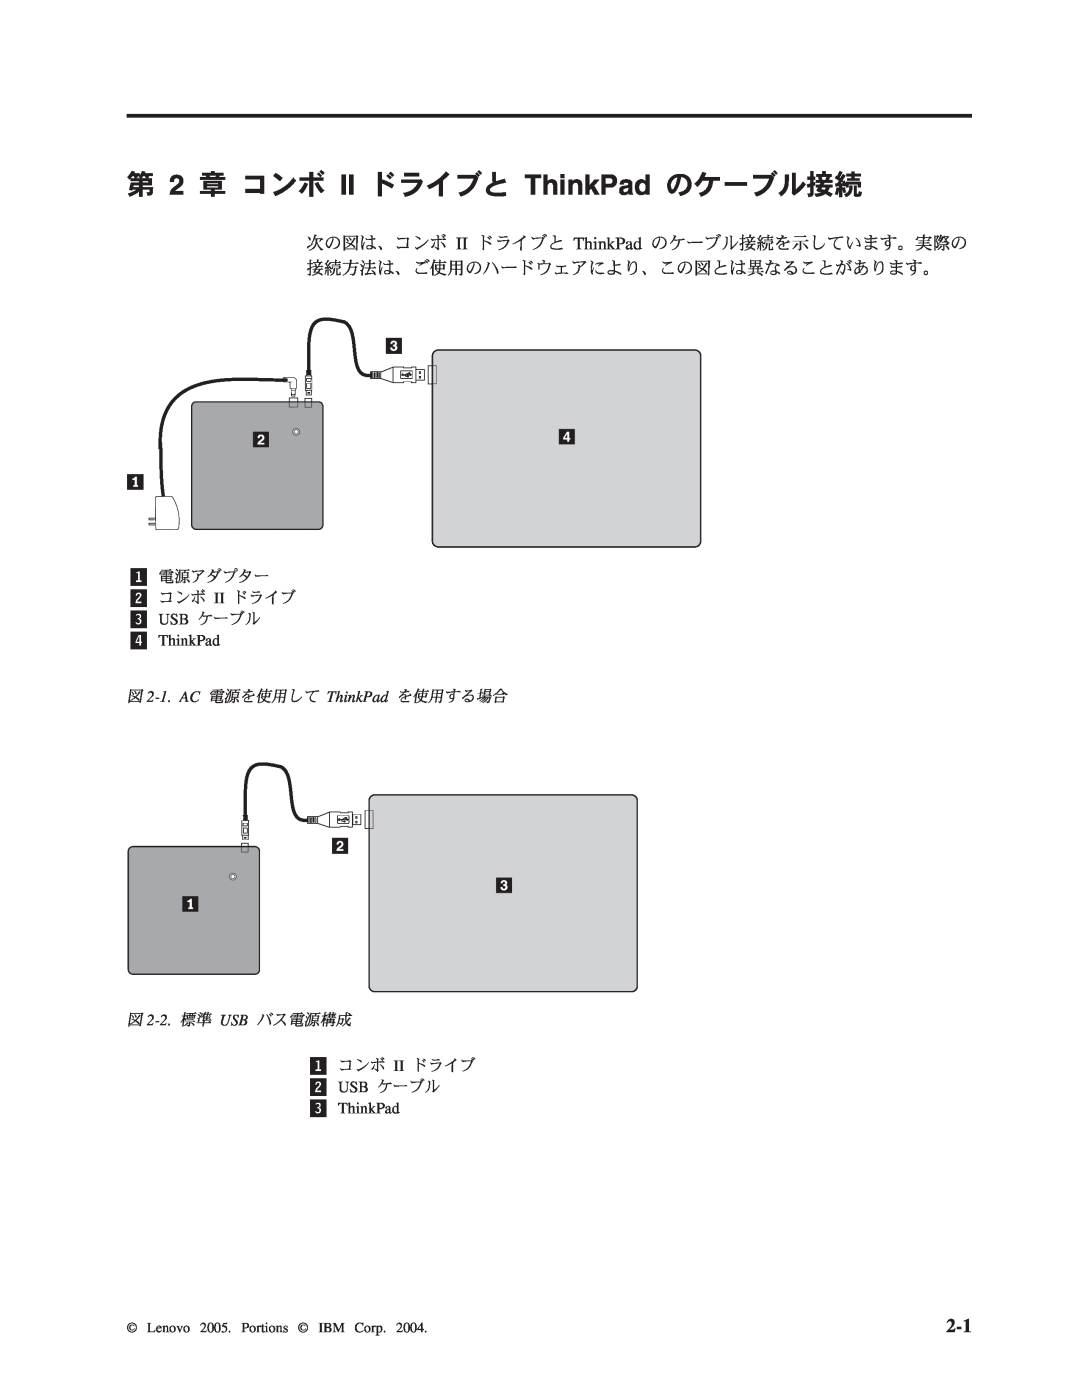 Lenovo 40Y8637, 40Y8692 manual 第 2 章 コンボ II ドライブと ThinkPad のケーブル接続, 図 2-1.AC 電源を使用して ThinkPad を使用する場合, 図 2-2. 標準 USB バス電源構成 